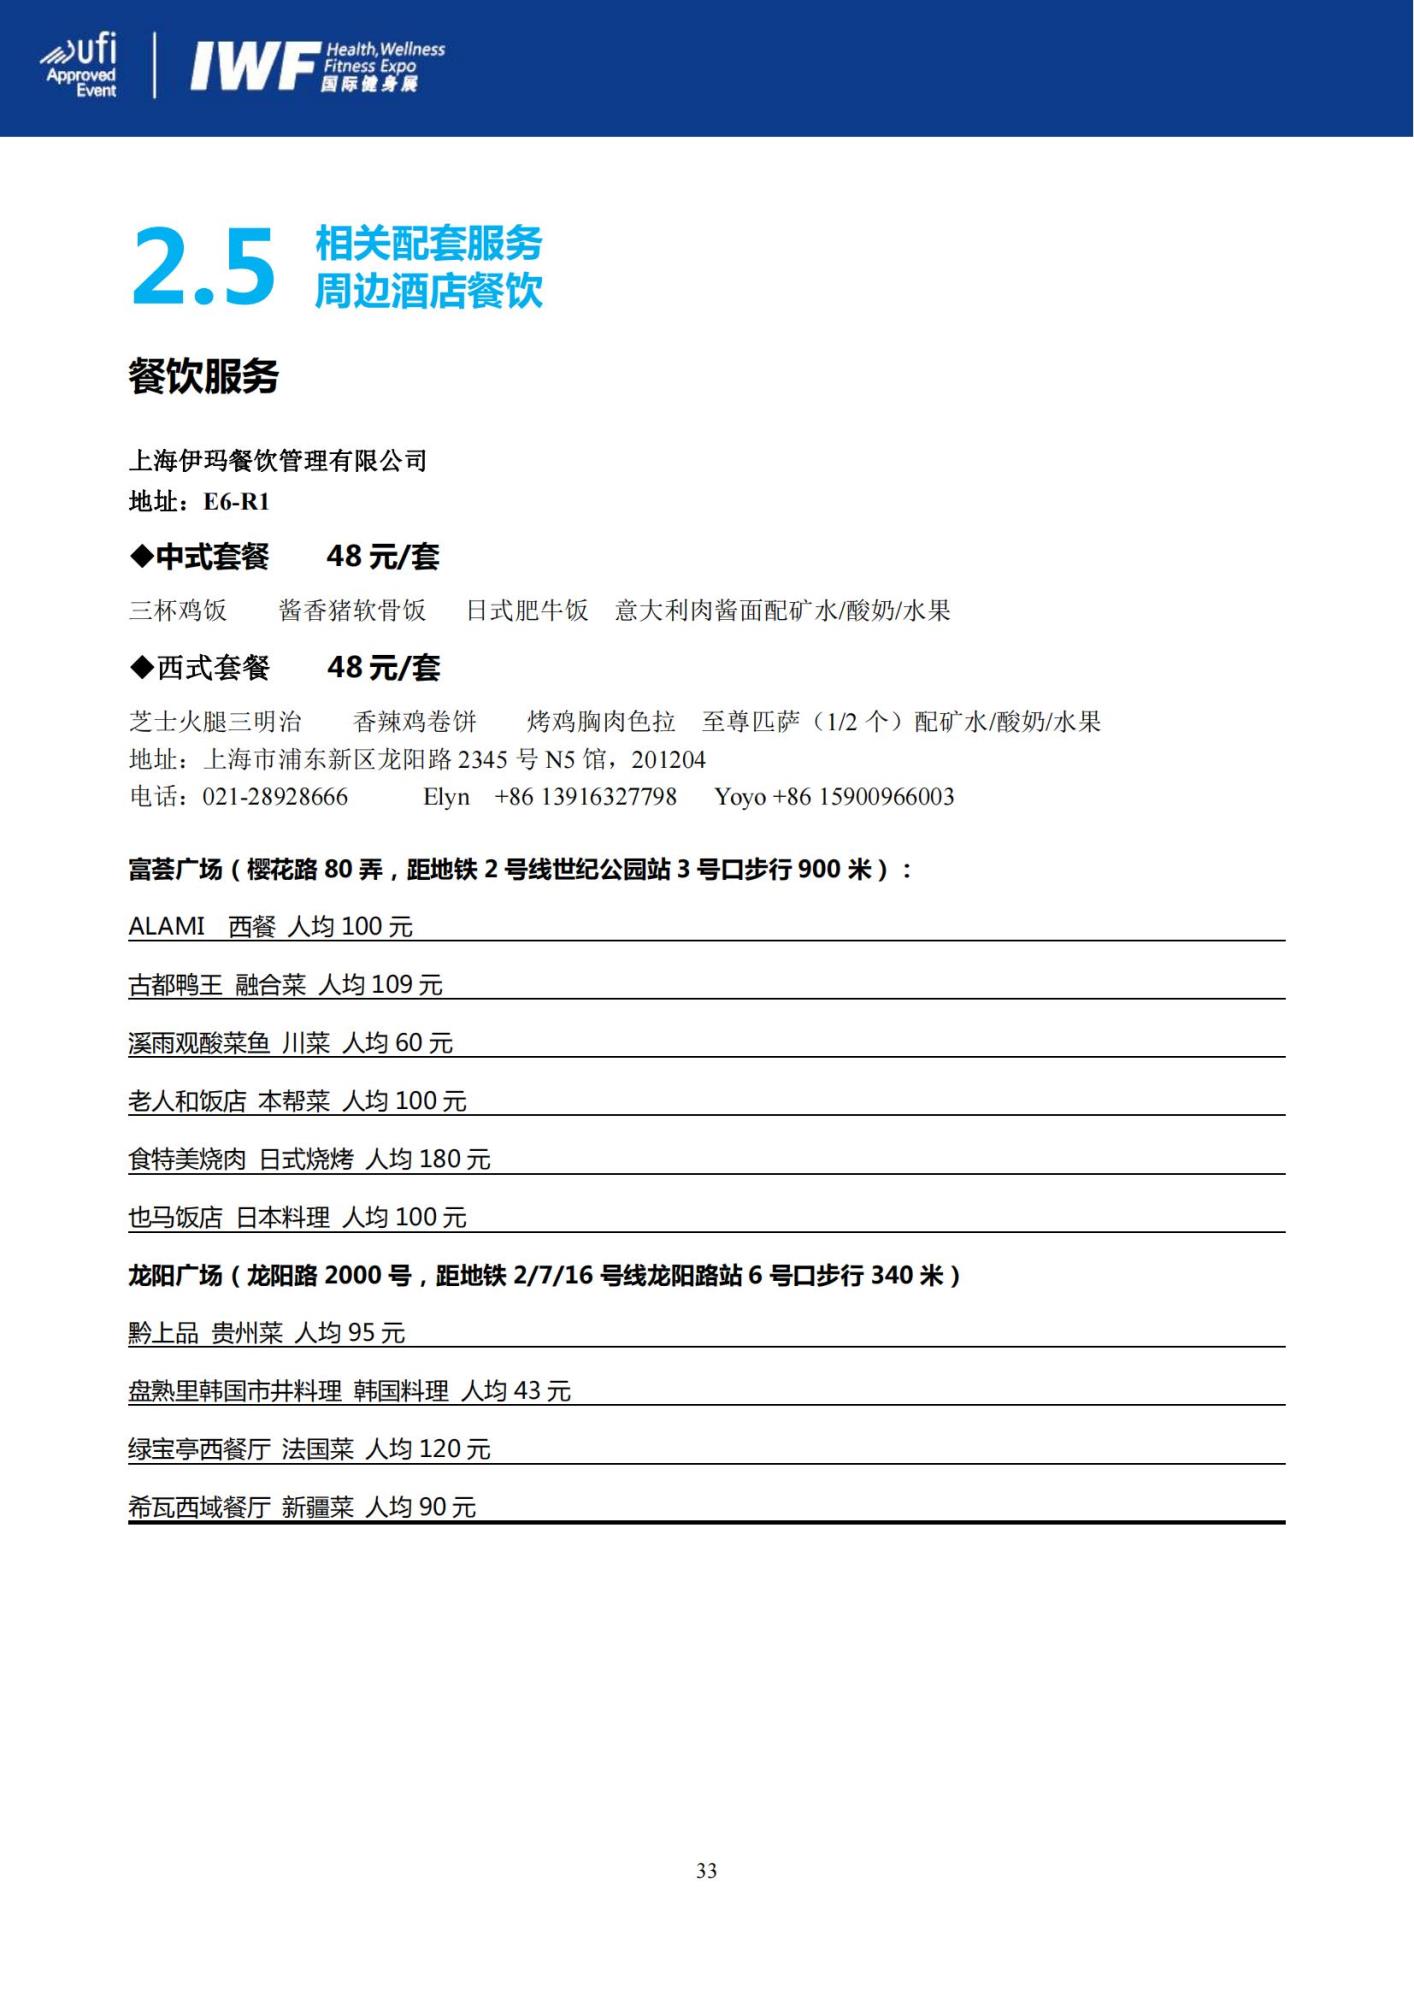 IWF 2023上海国际健身展参展商手册 1_33_00.jpg